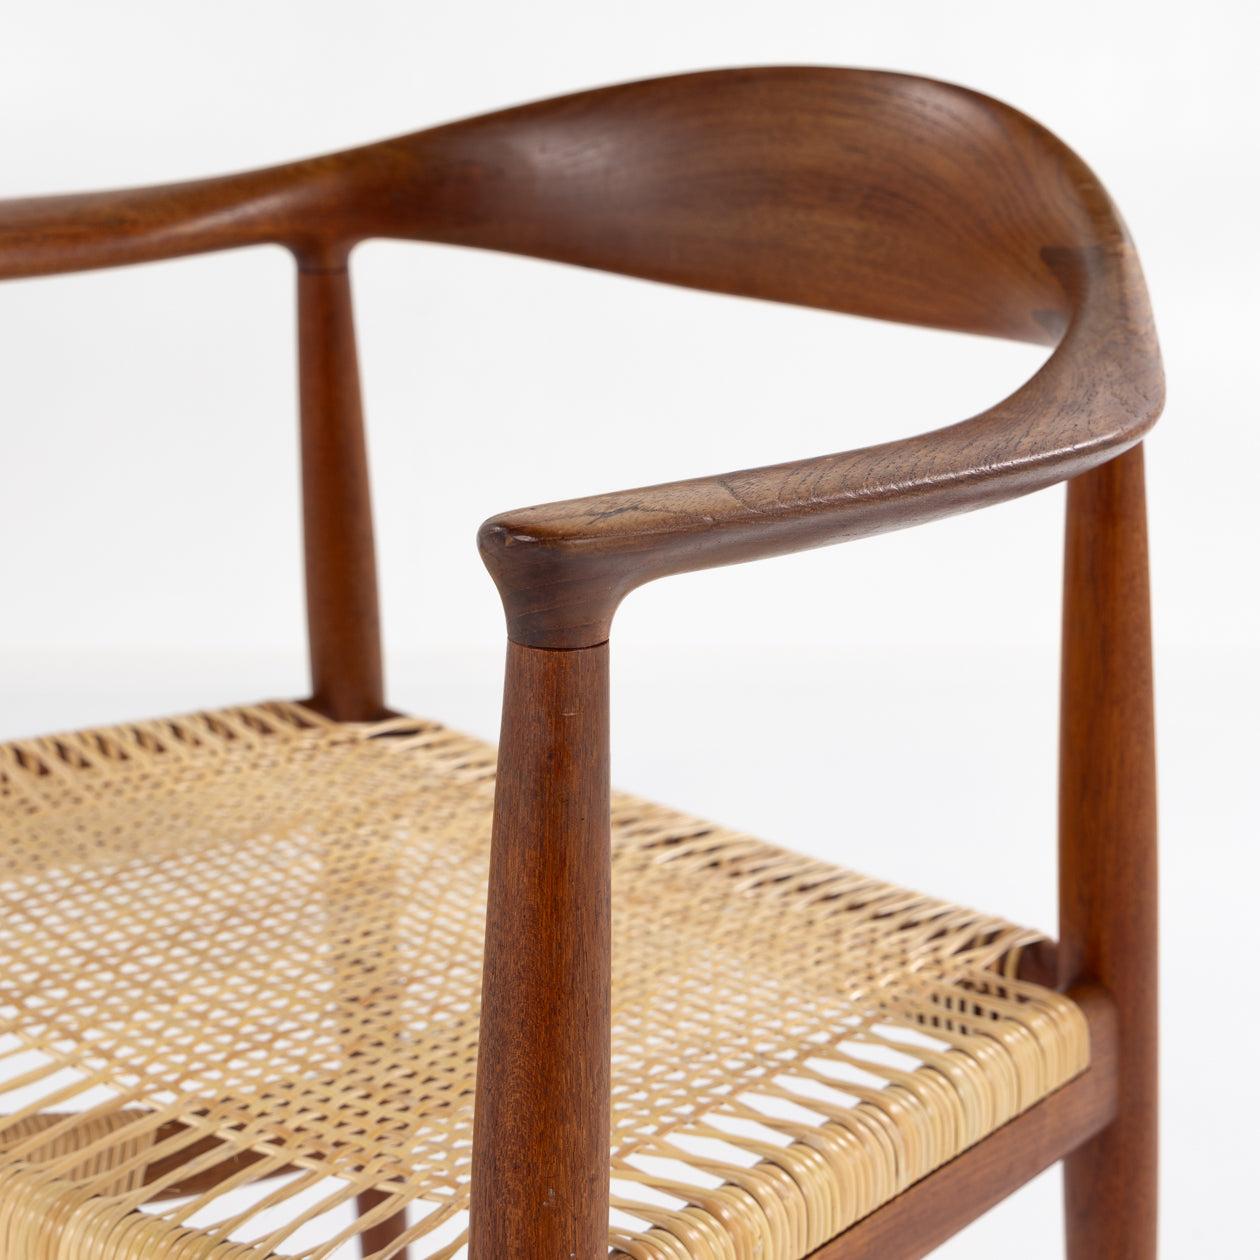 JH 501 - 'The Chair' in teak by Hans J. Wegner 1